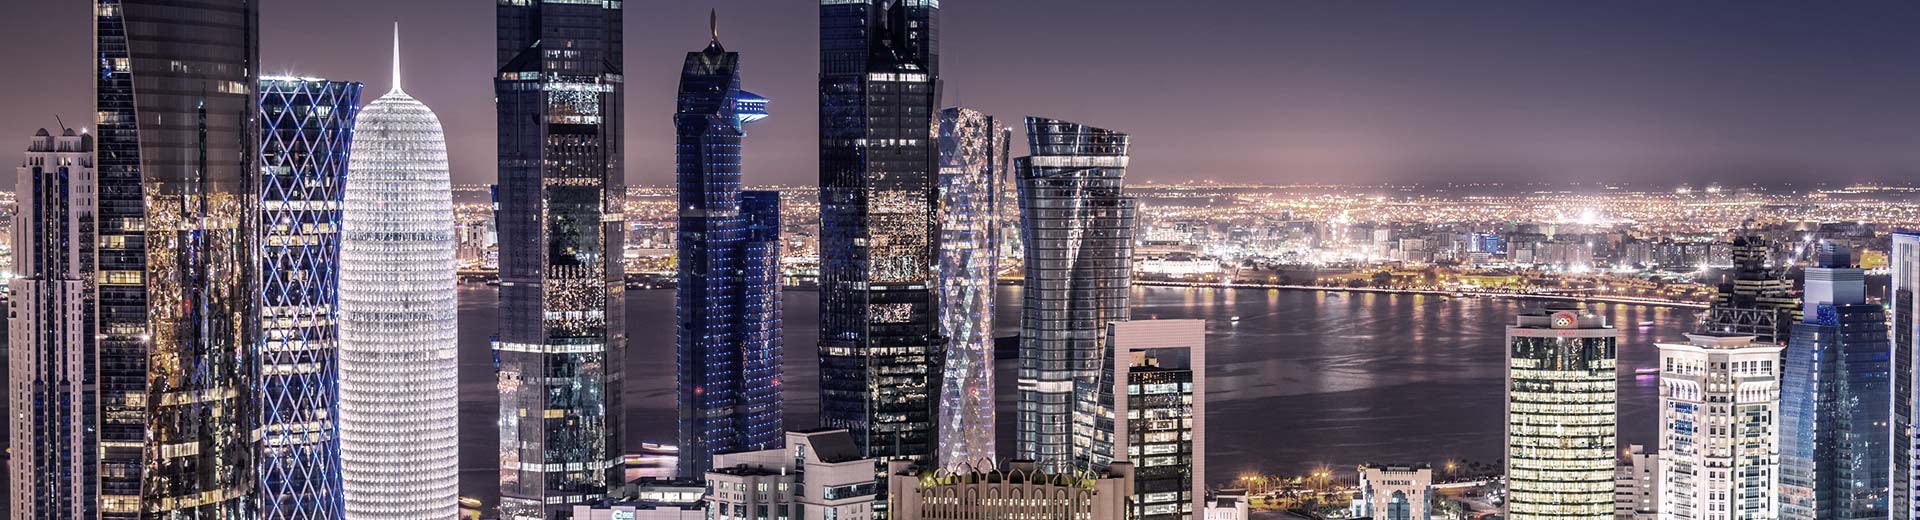 Los rascacielos variados e imponentes de Doha perforan el Nightsky.